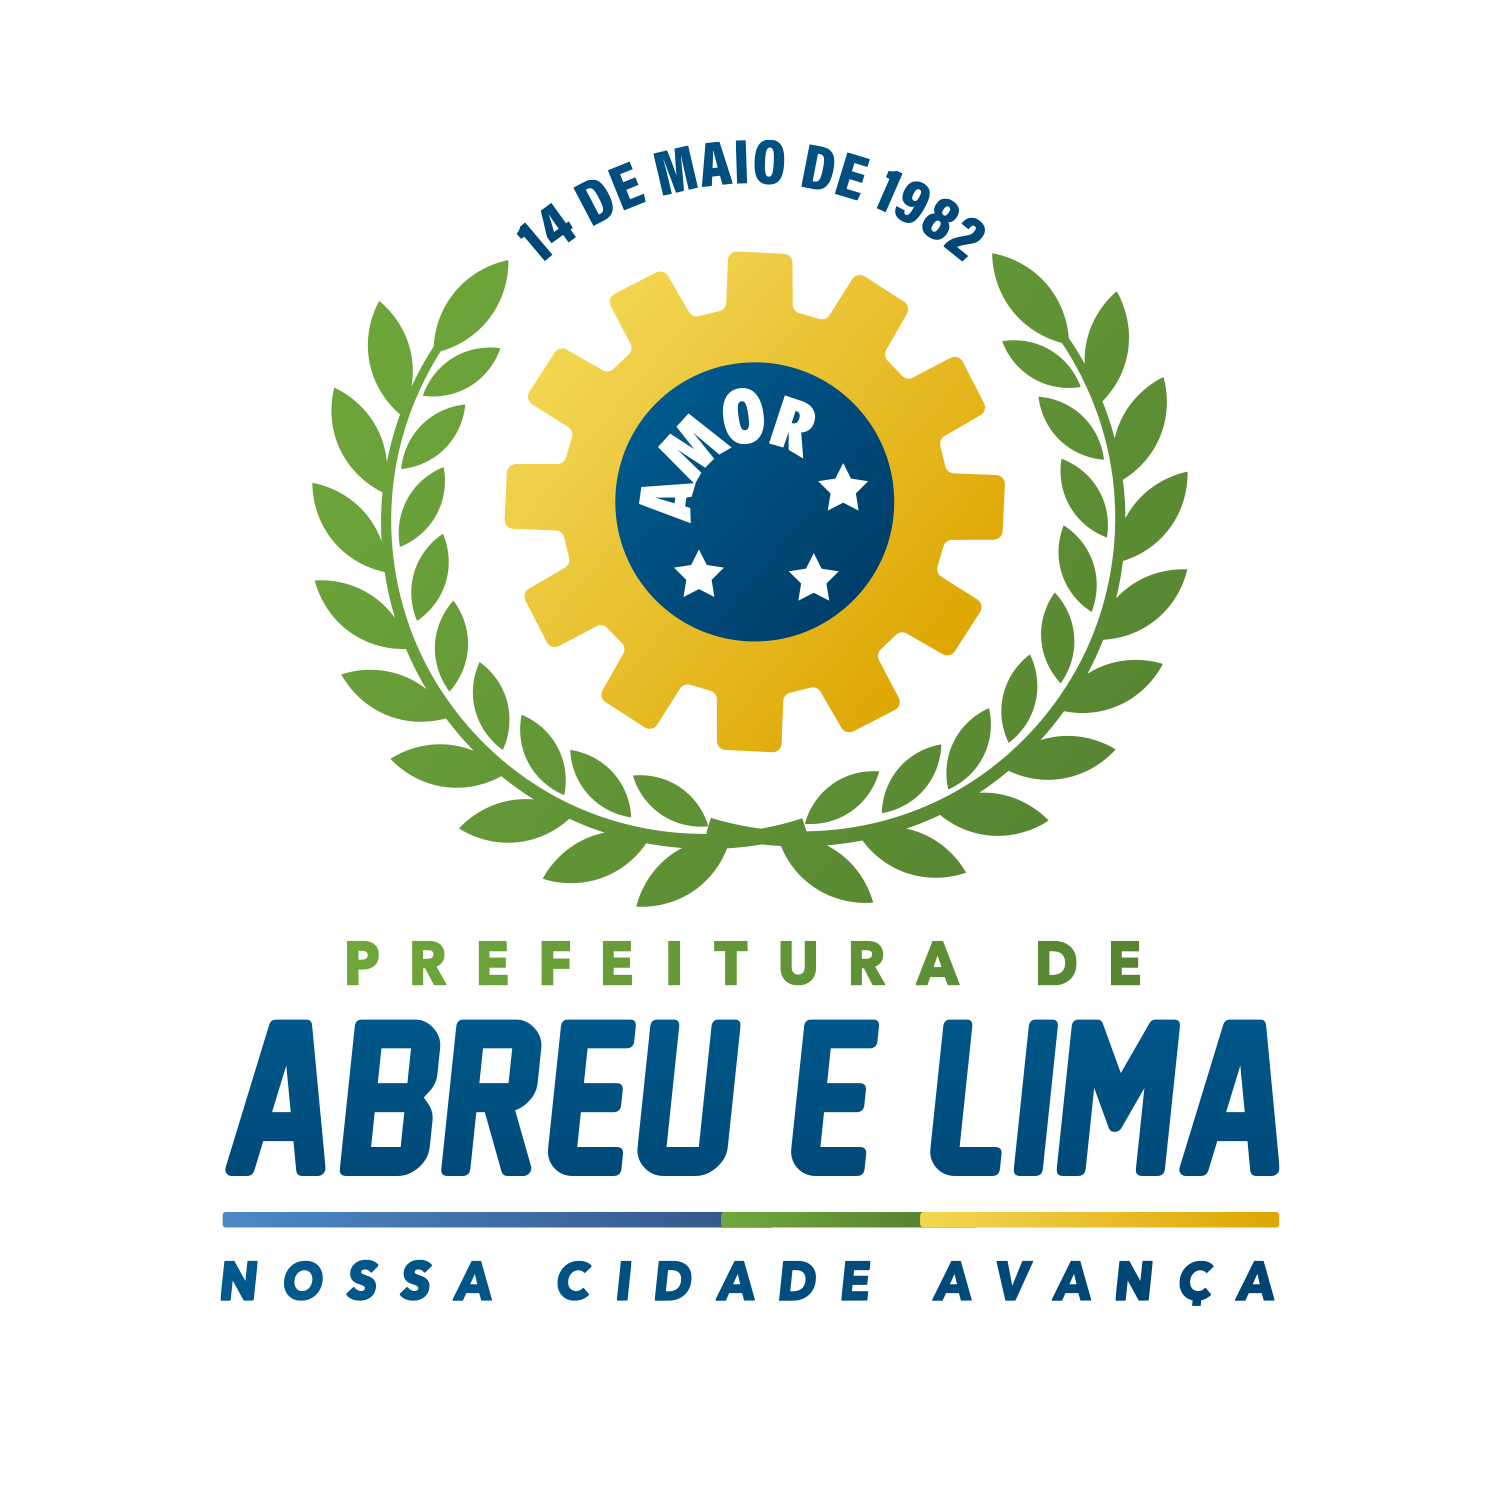 Prefeitura Municipal de Abreu e Lima